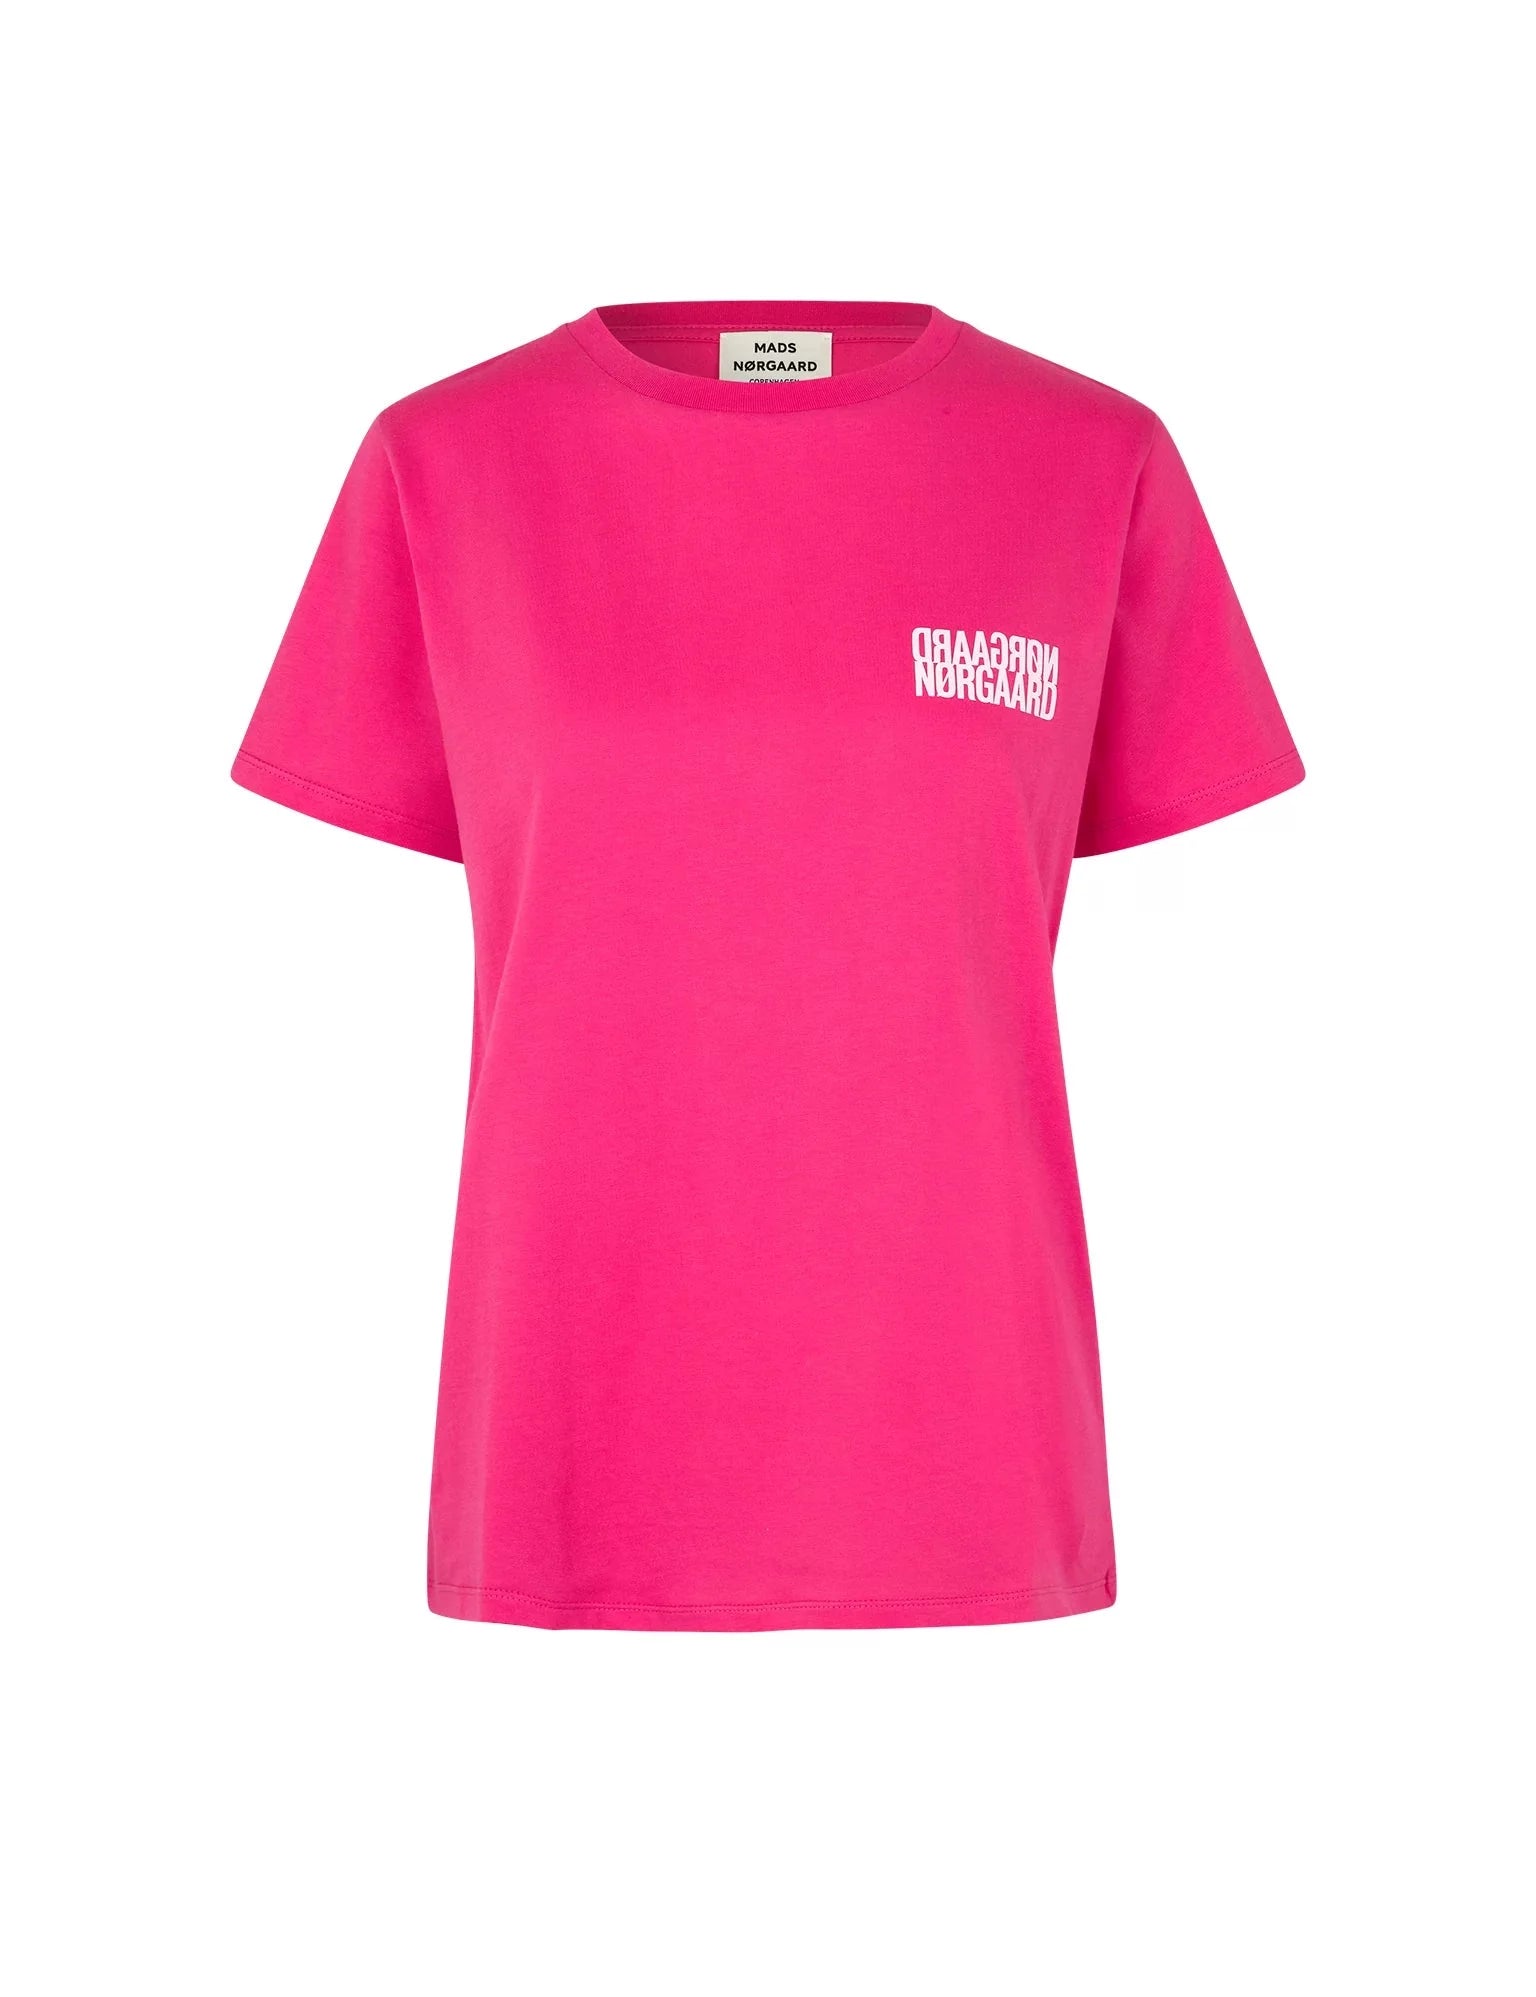 Mads Nørgaard - Single Organic Trenda T-skjorte, rosa by Mads Nørgaard | stylebykul